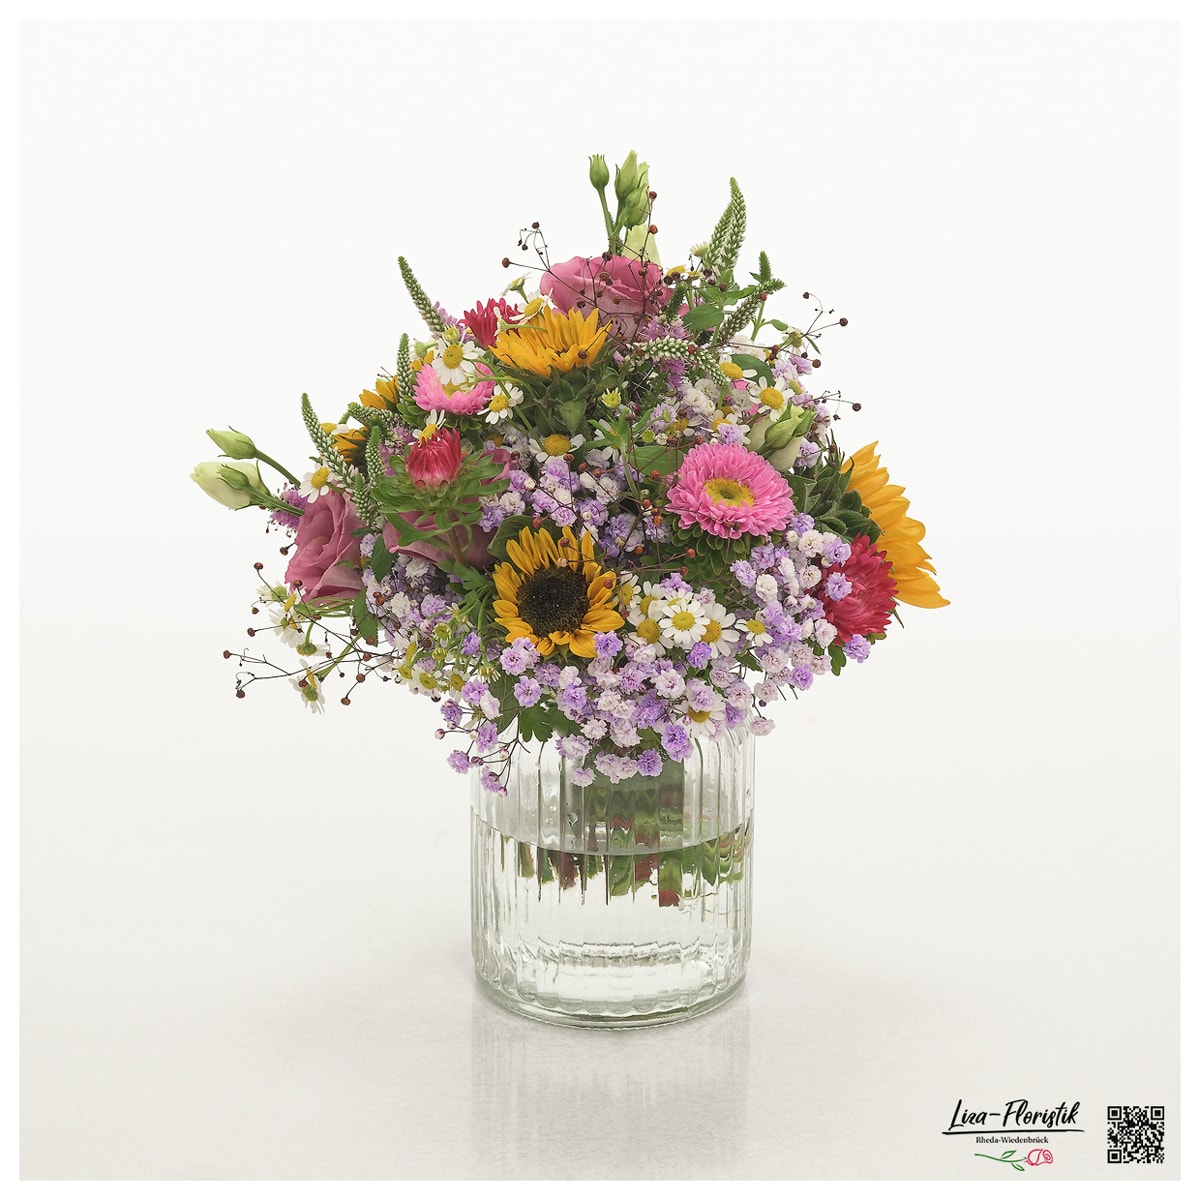 Blumenstrauß mit Astern, Sonnenblumen Sonja, Lisianthus, Kamille, Schleierkraut